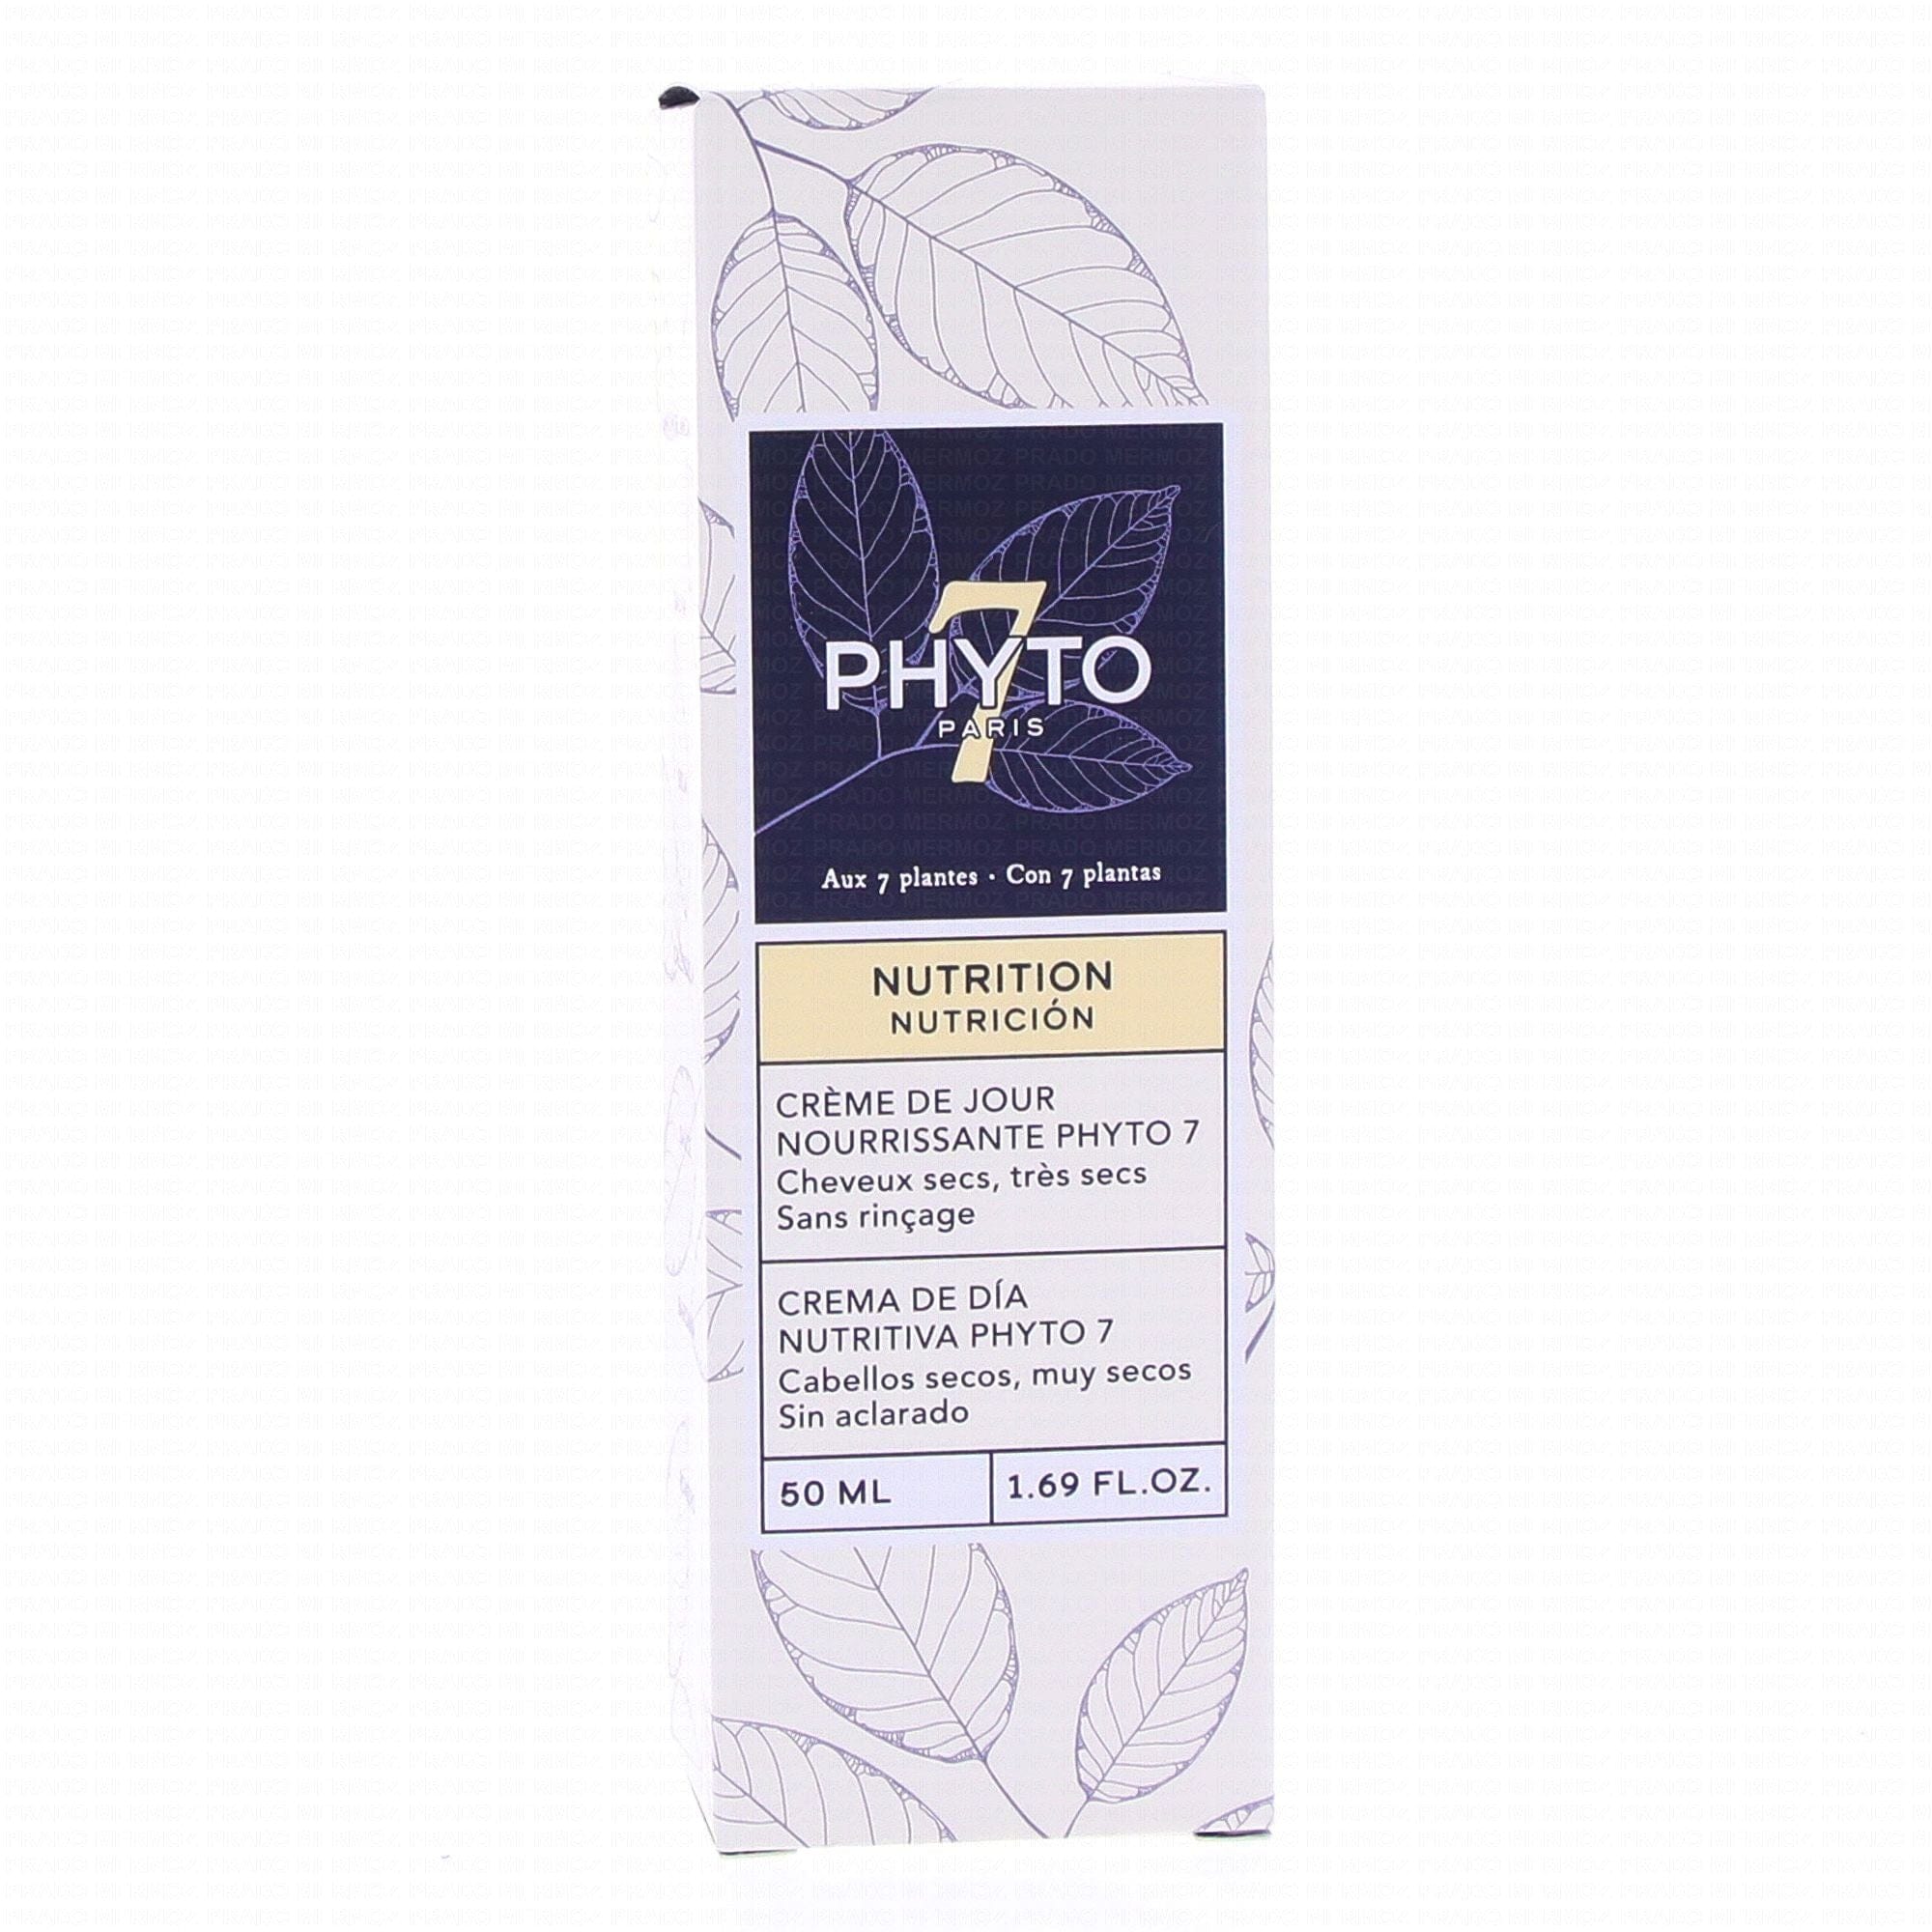 PHYTO Soins & Beauté Phyto 7 (crème de jour nourrisante) 50ml